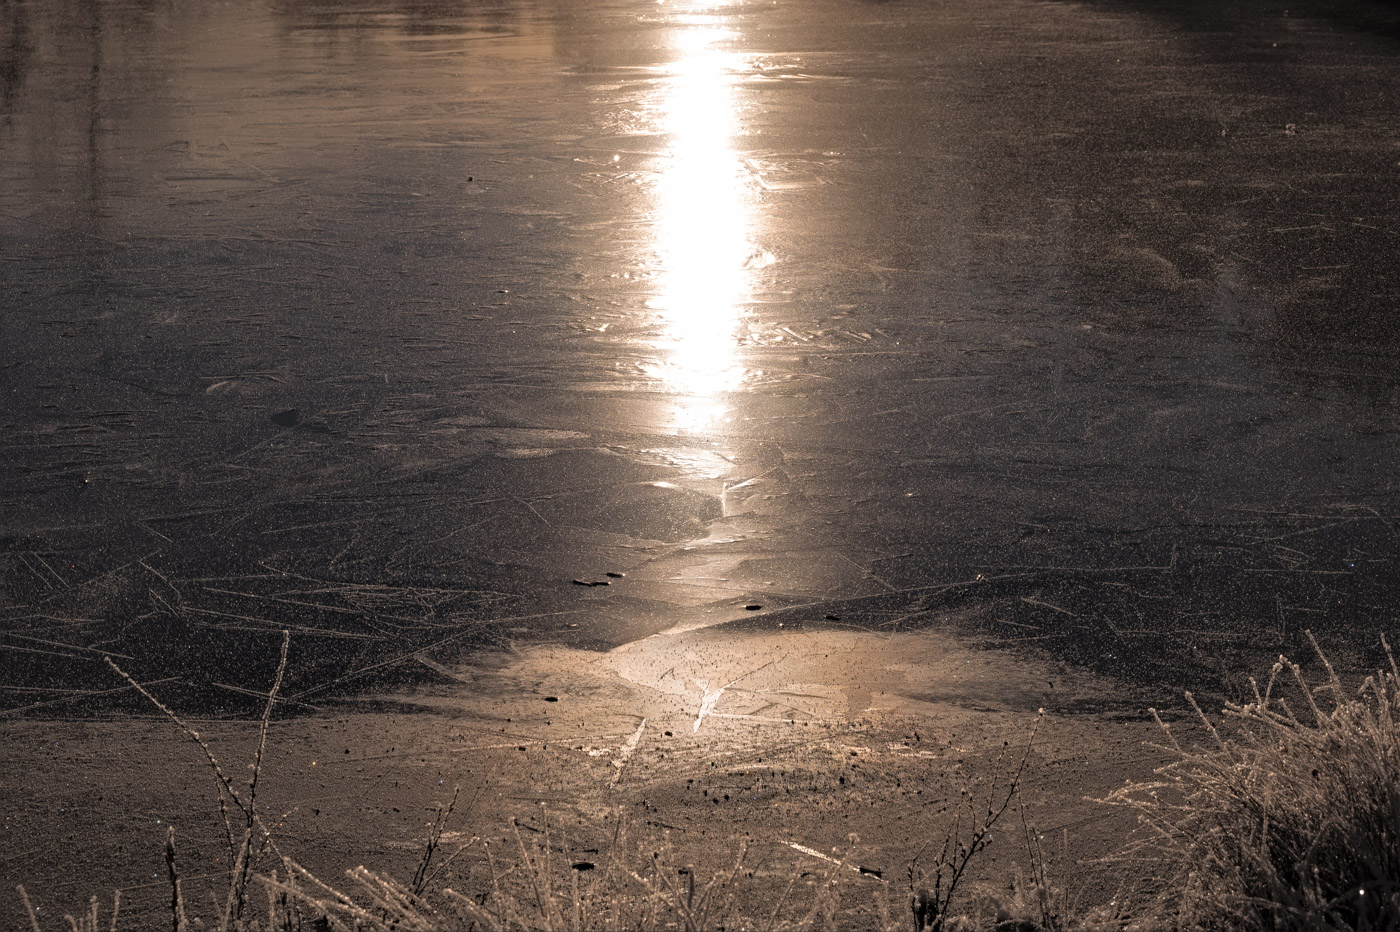 Sun at dawn reflected in a lake